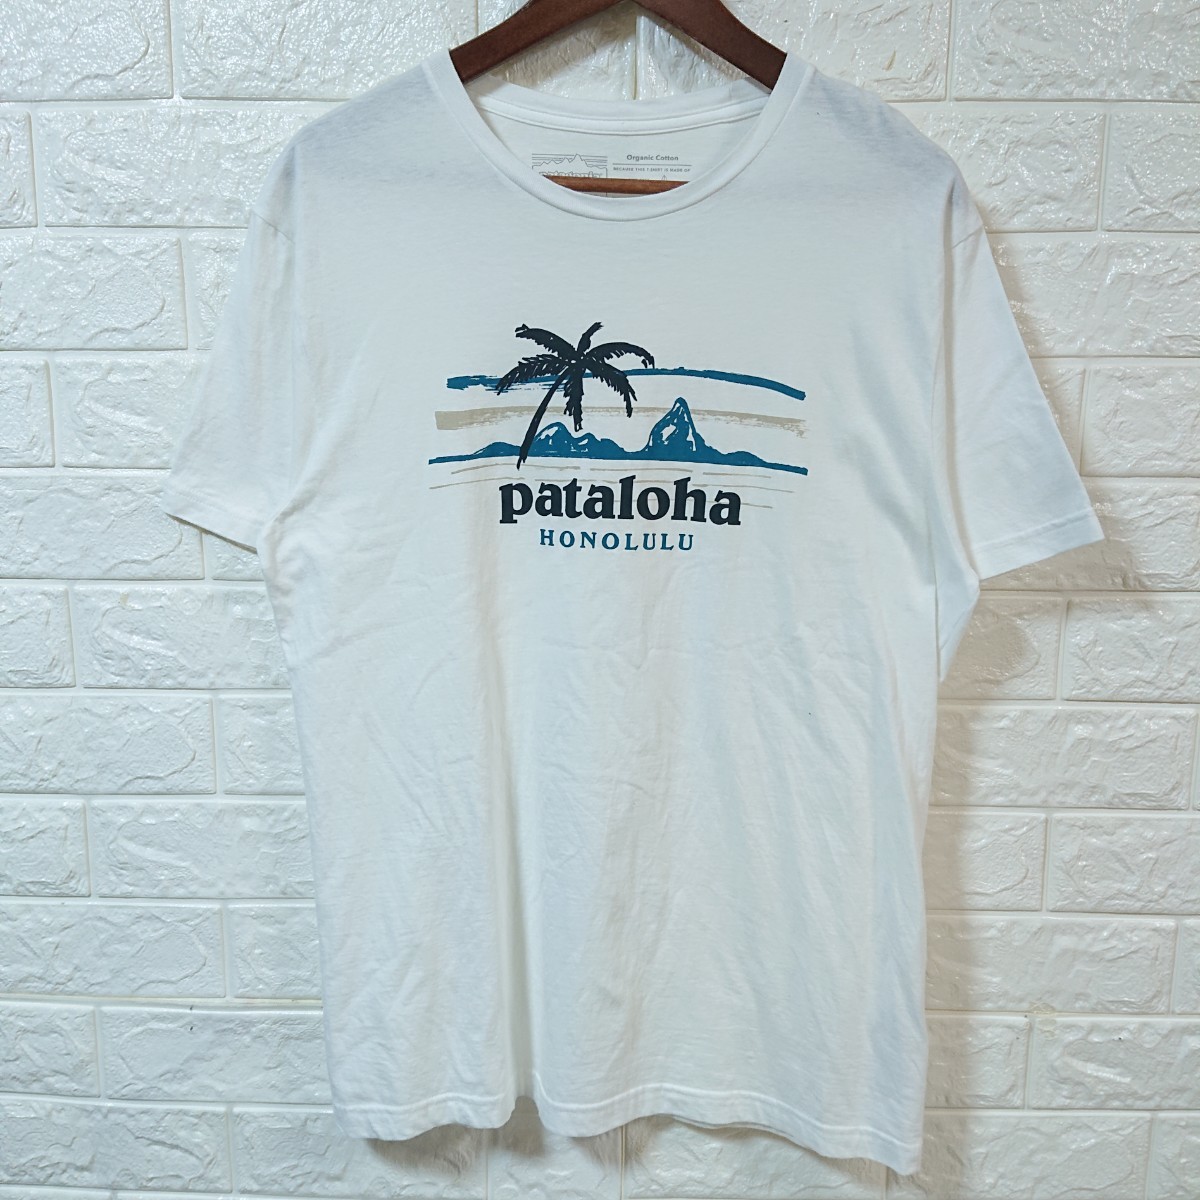 【ハワイ限定】patagonia パタゴニア pataloha パタロハ HONOLULU ホノルル Tシャツ Mサイズ ホワイト logo t-shirt tee hawaii_画像2